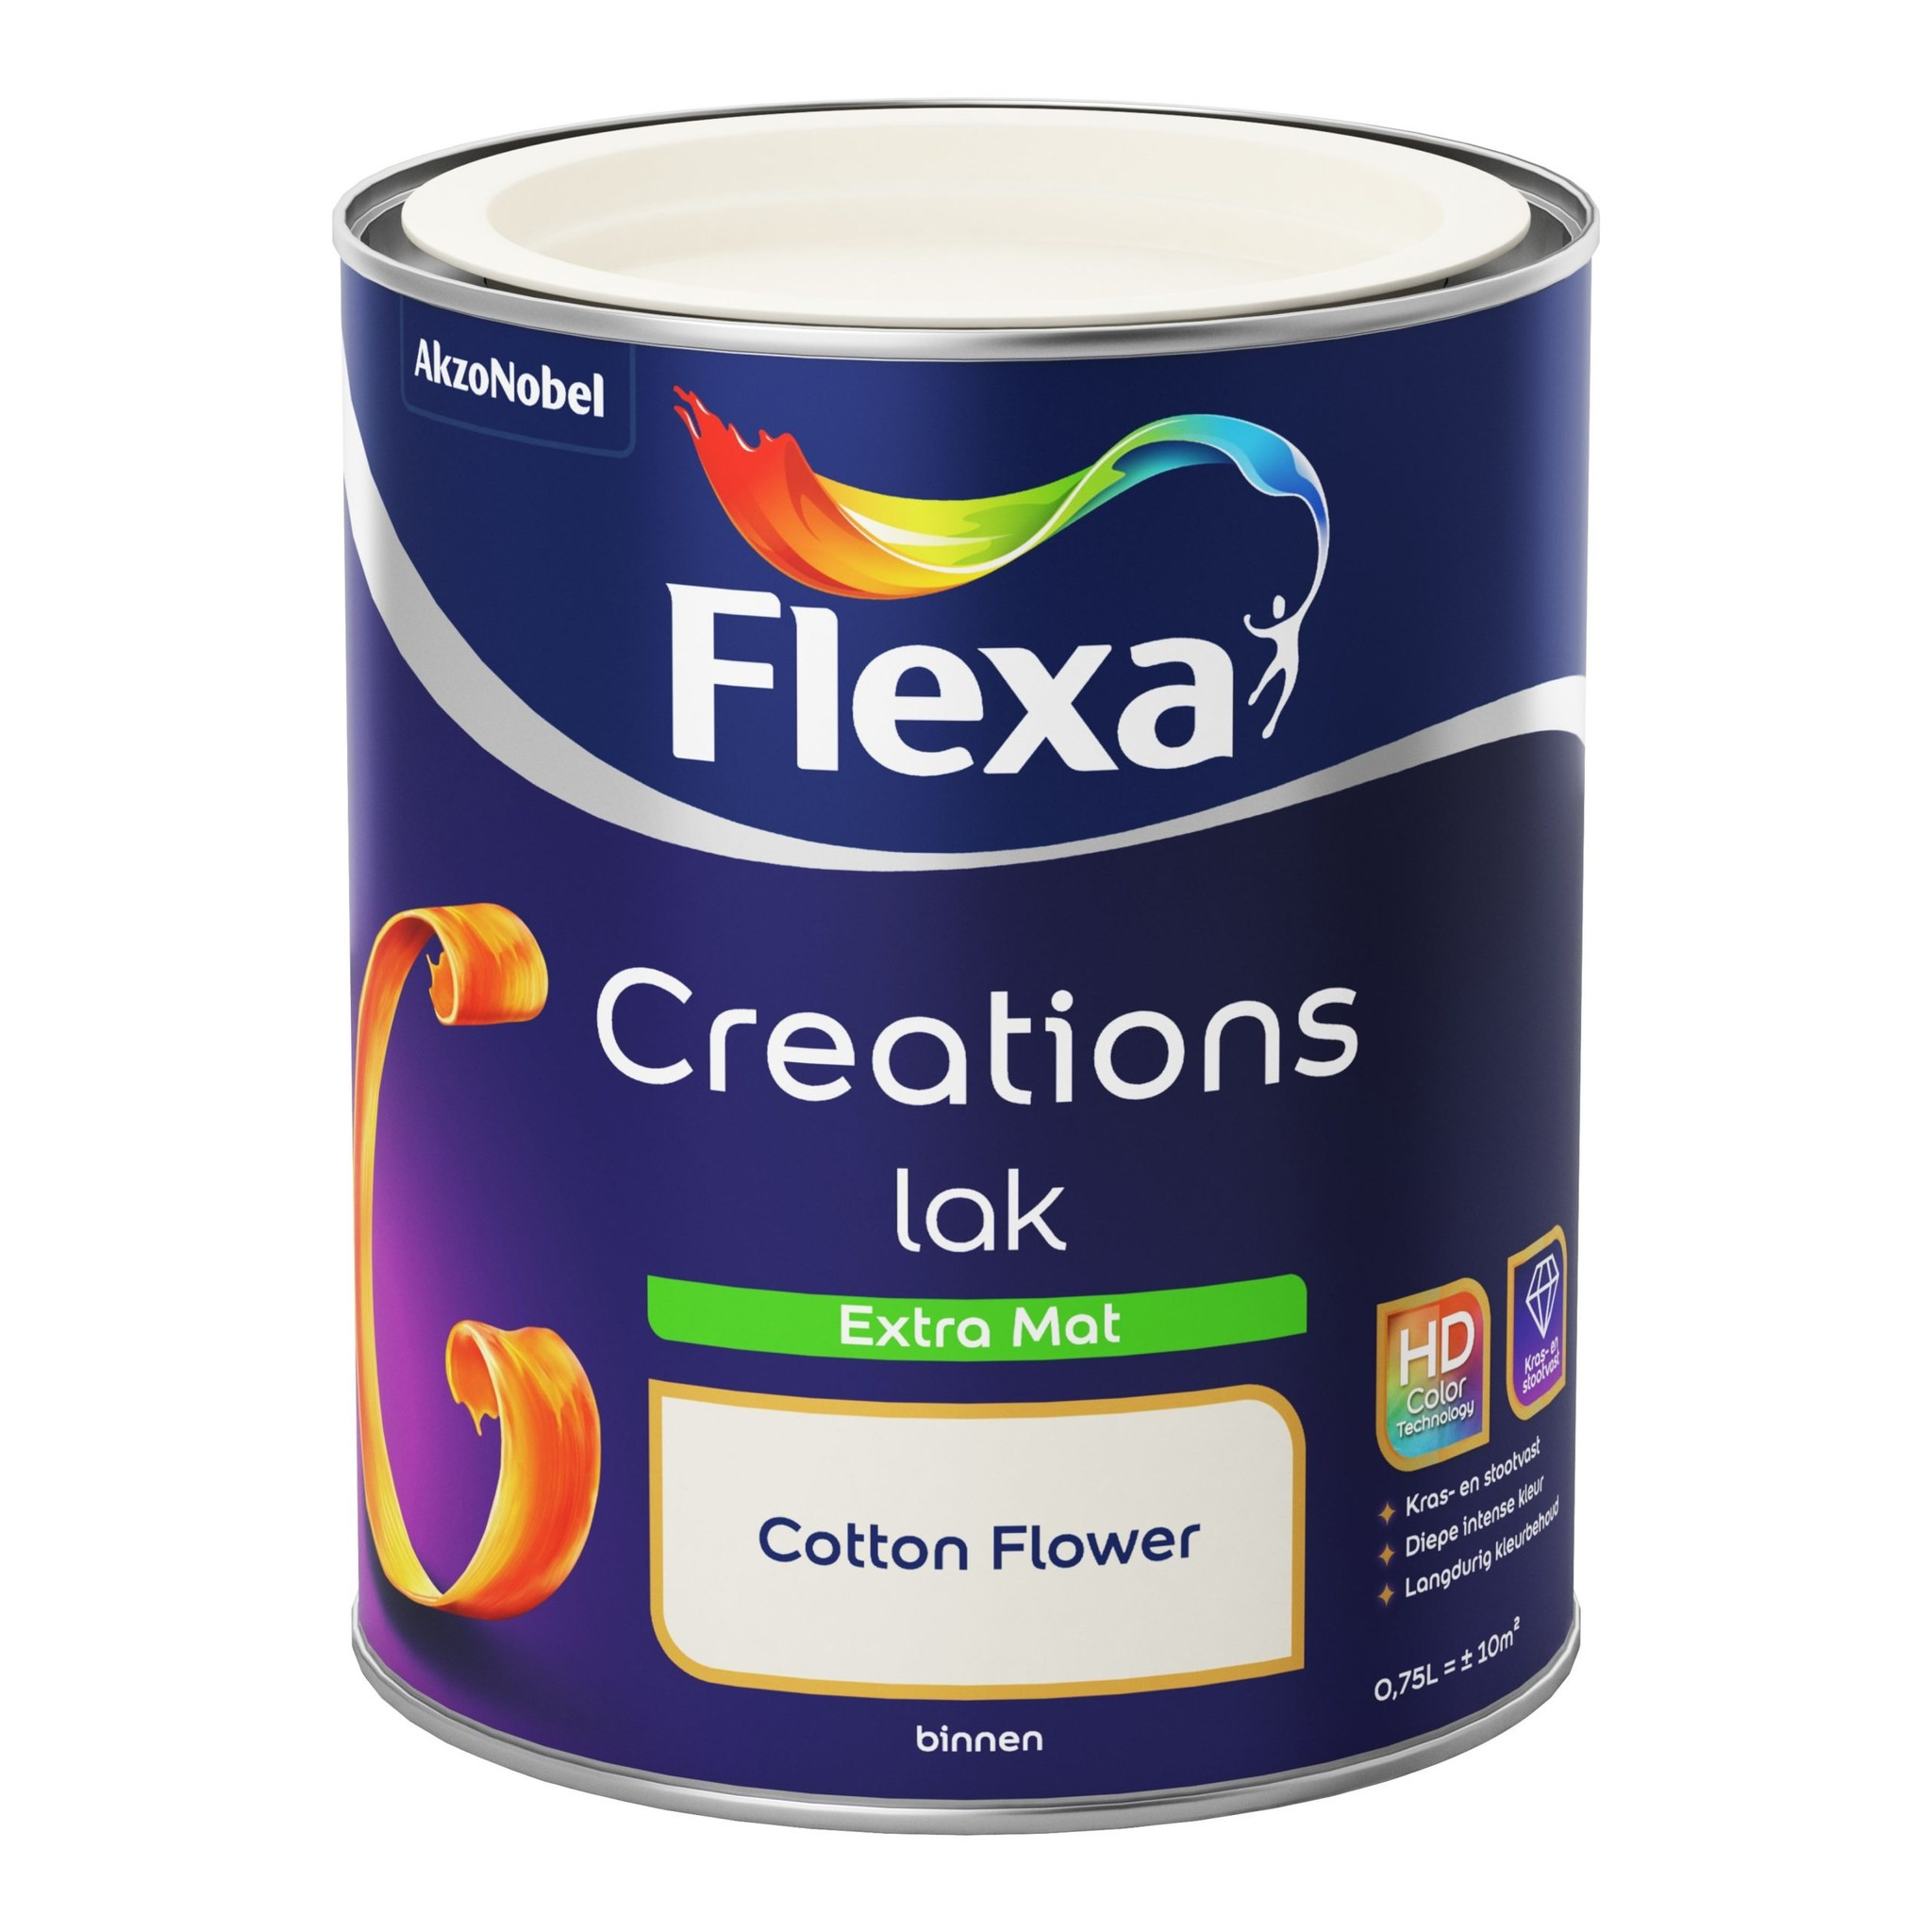 Flexa Creations Lak Extra Mat - Cotton Flower